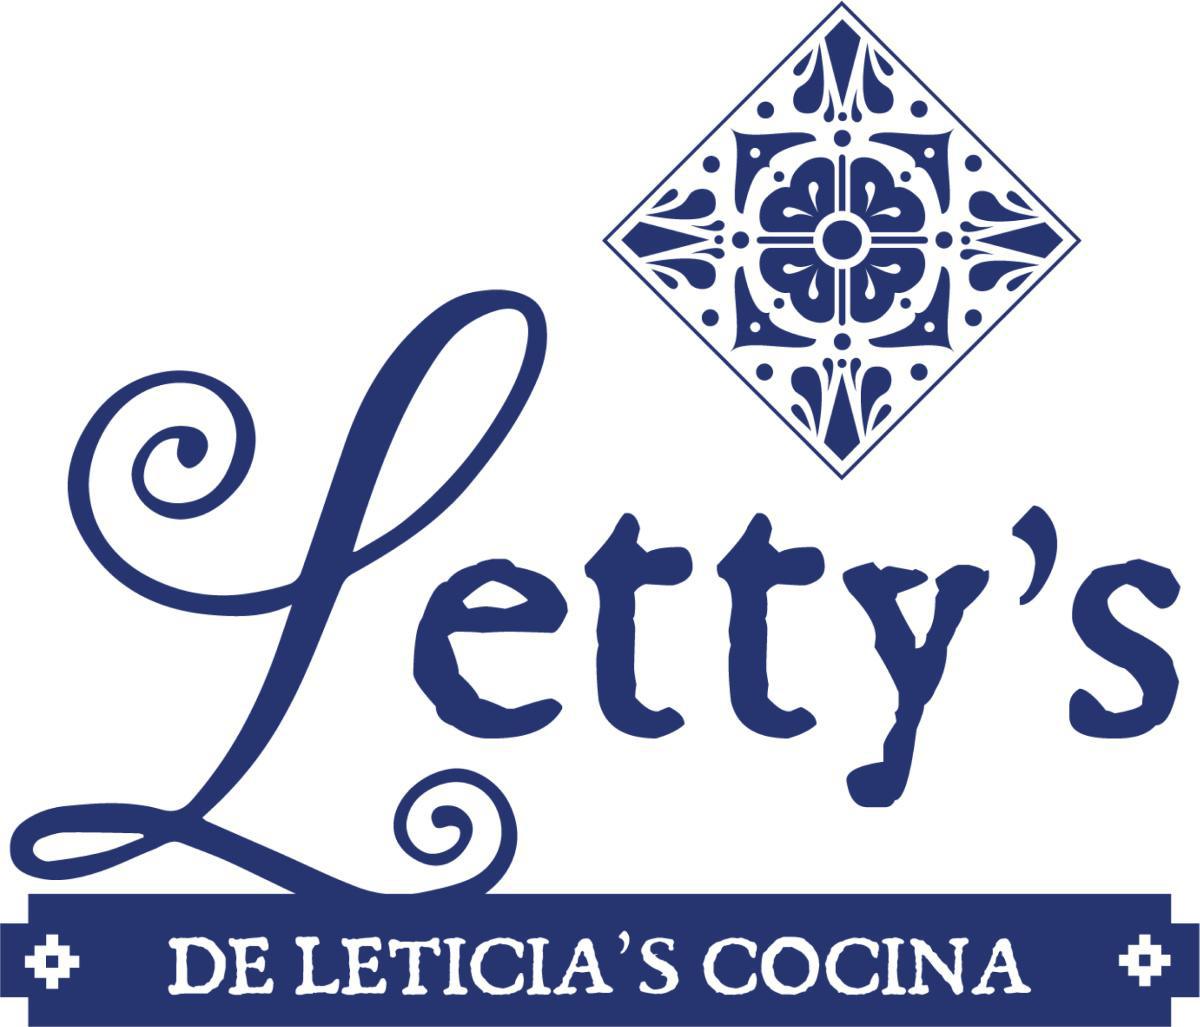 Letty's de Leticia's Cocina